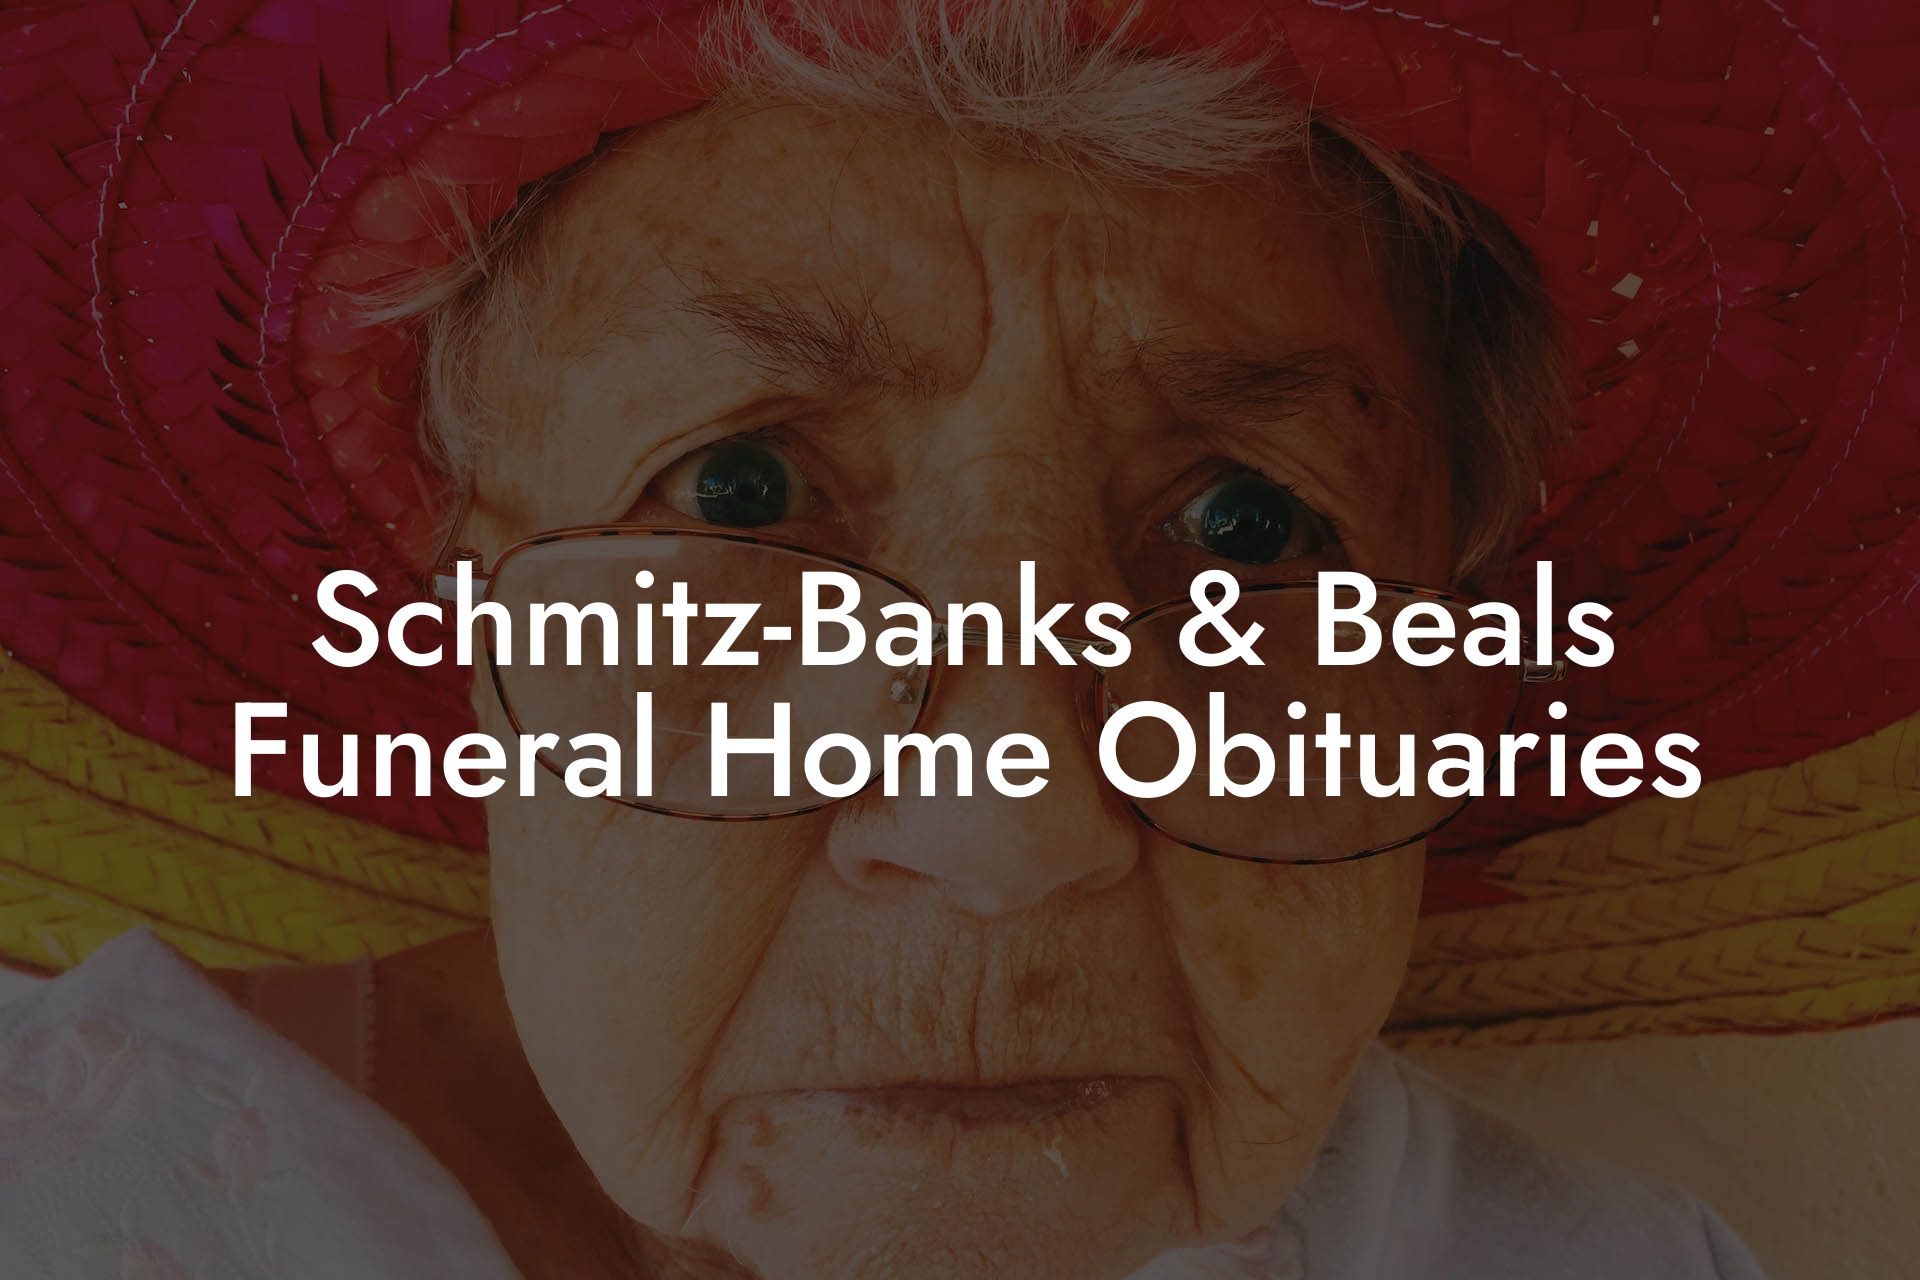 Schmitz-Banks & Beals Funeral Home Obituaries